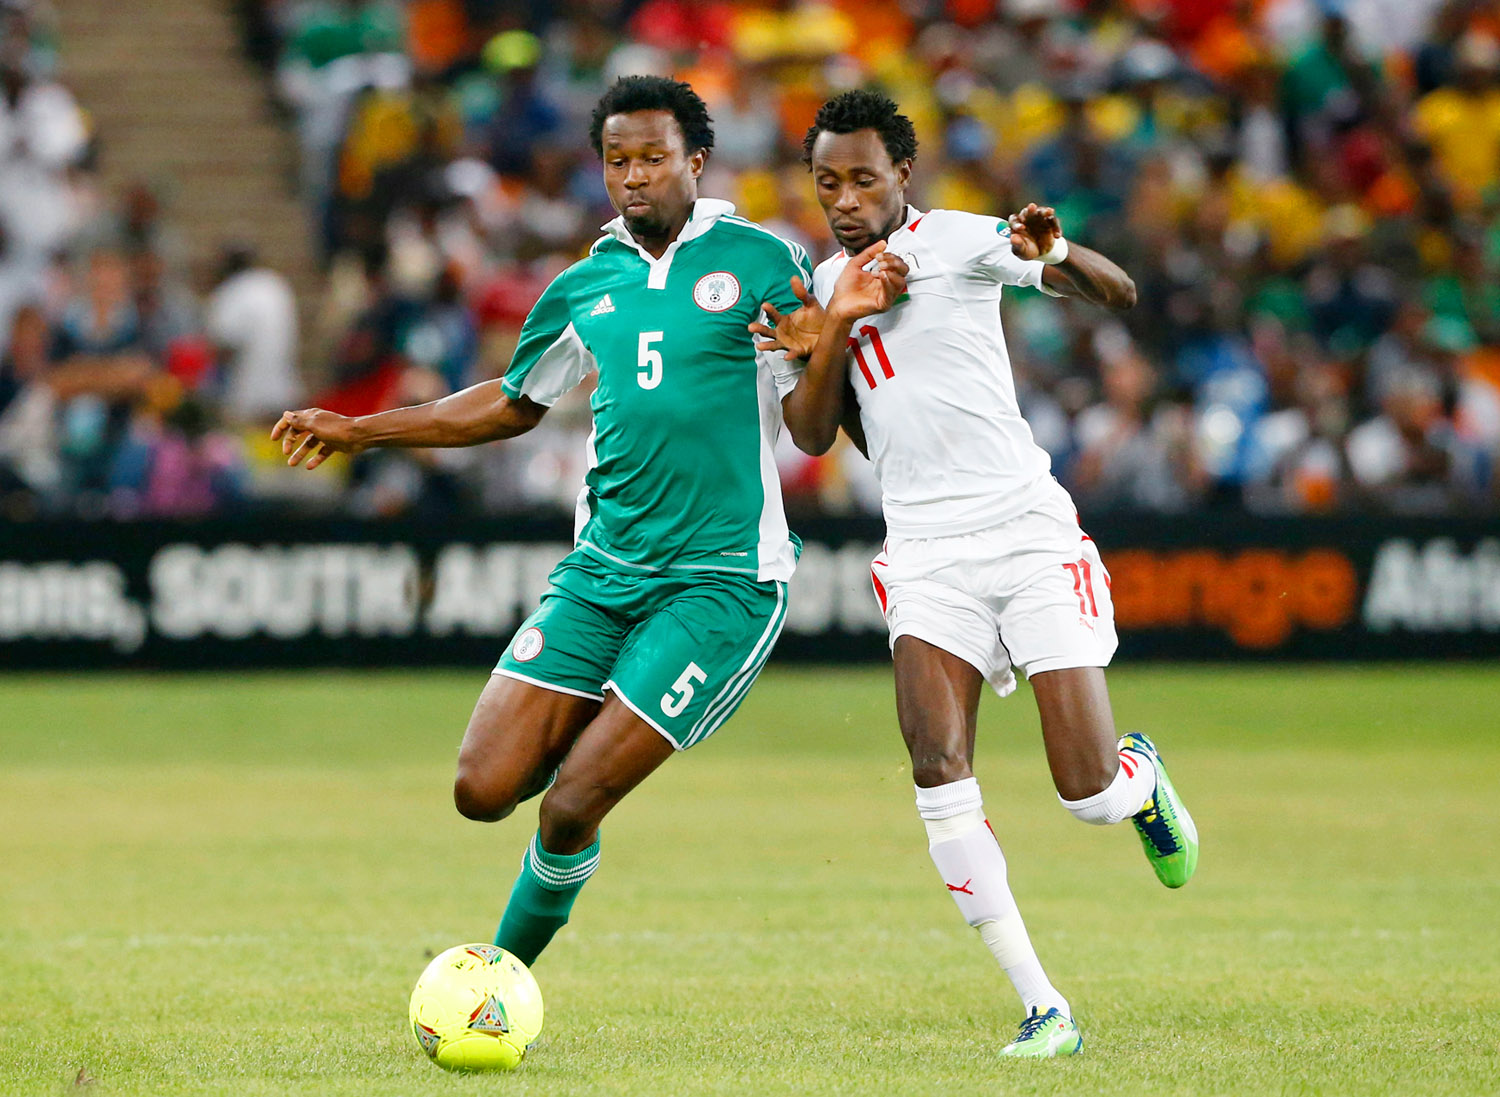 Pitroipa, a selejtezők gólkirálya (jobbra) az előző tornán a nigériai Ambrose-zal szemben